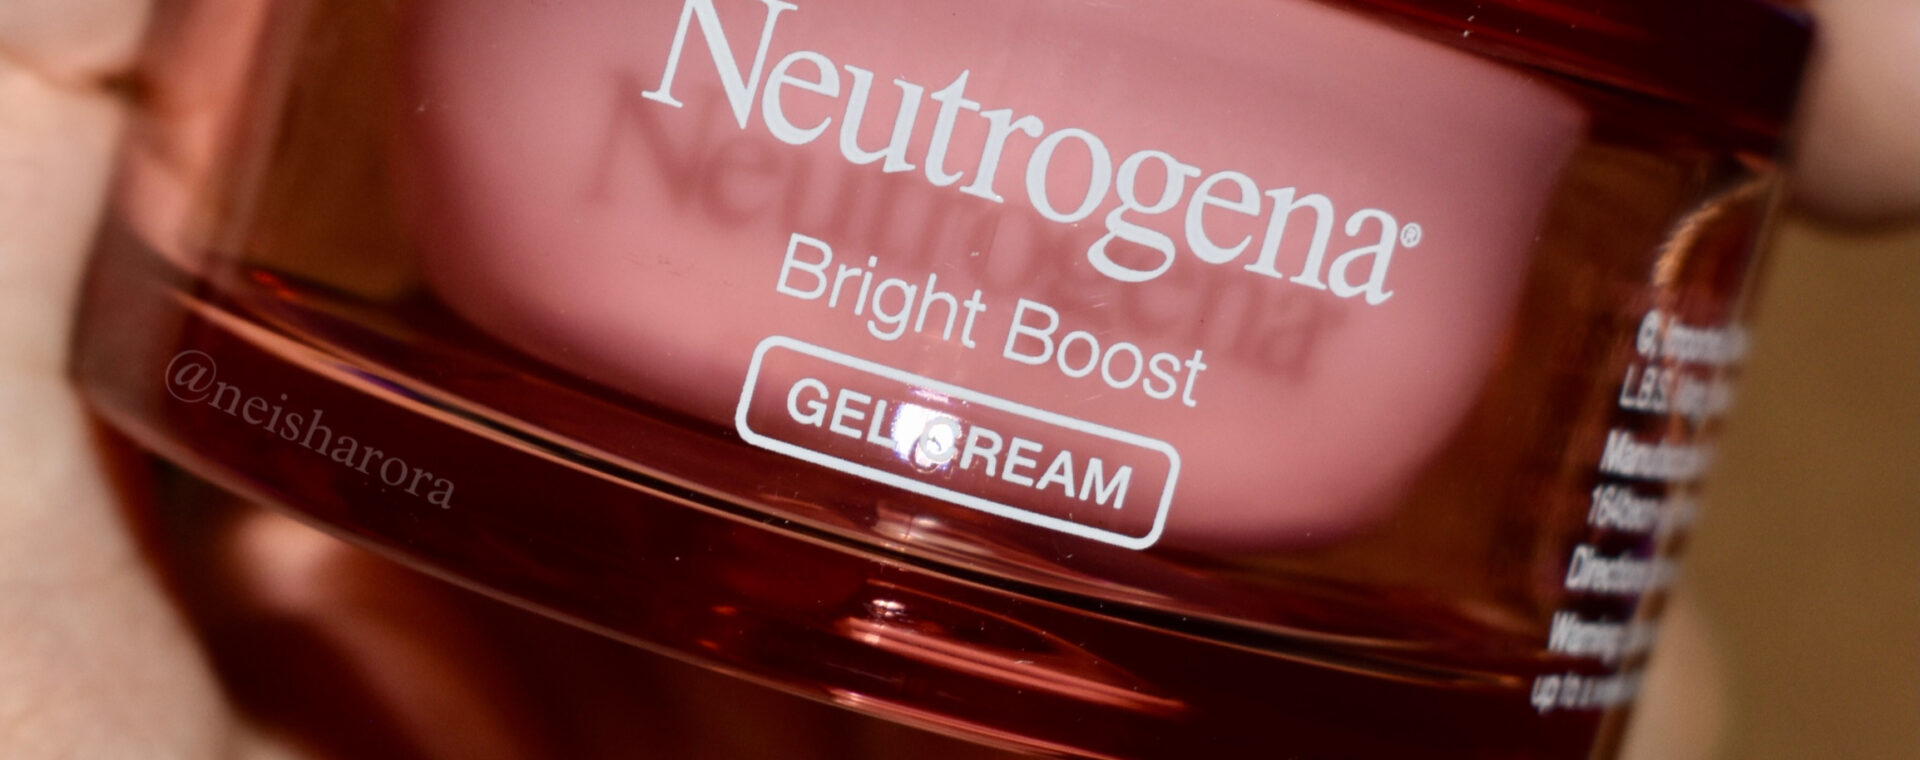 Neutrogena Bright Boost